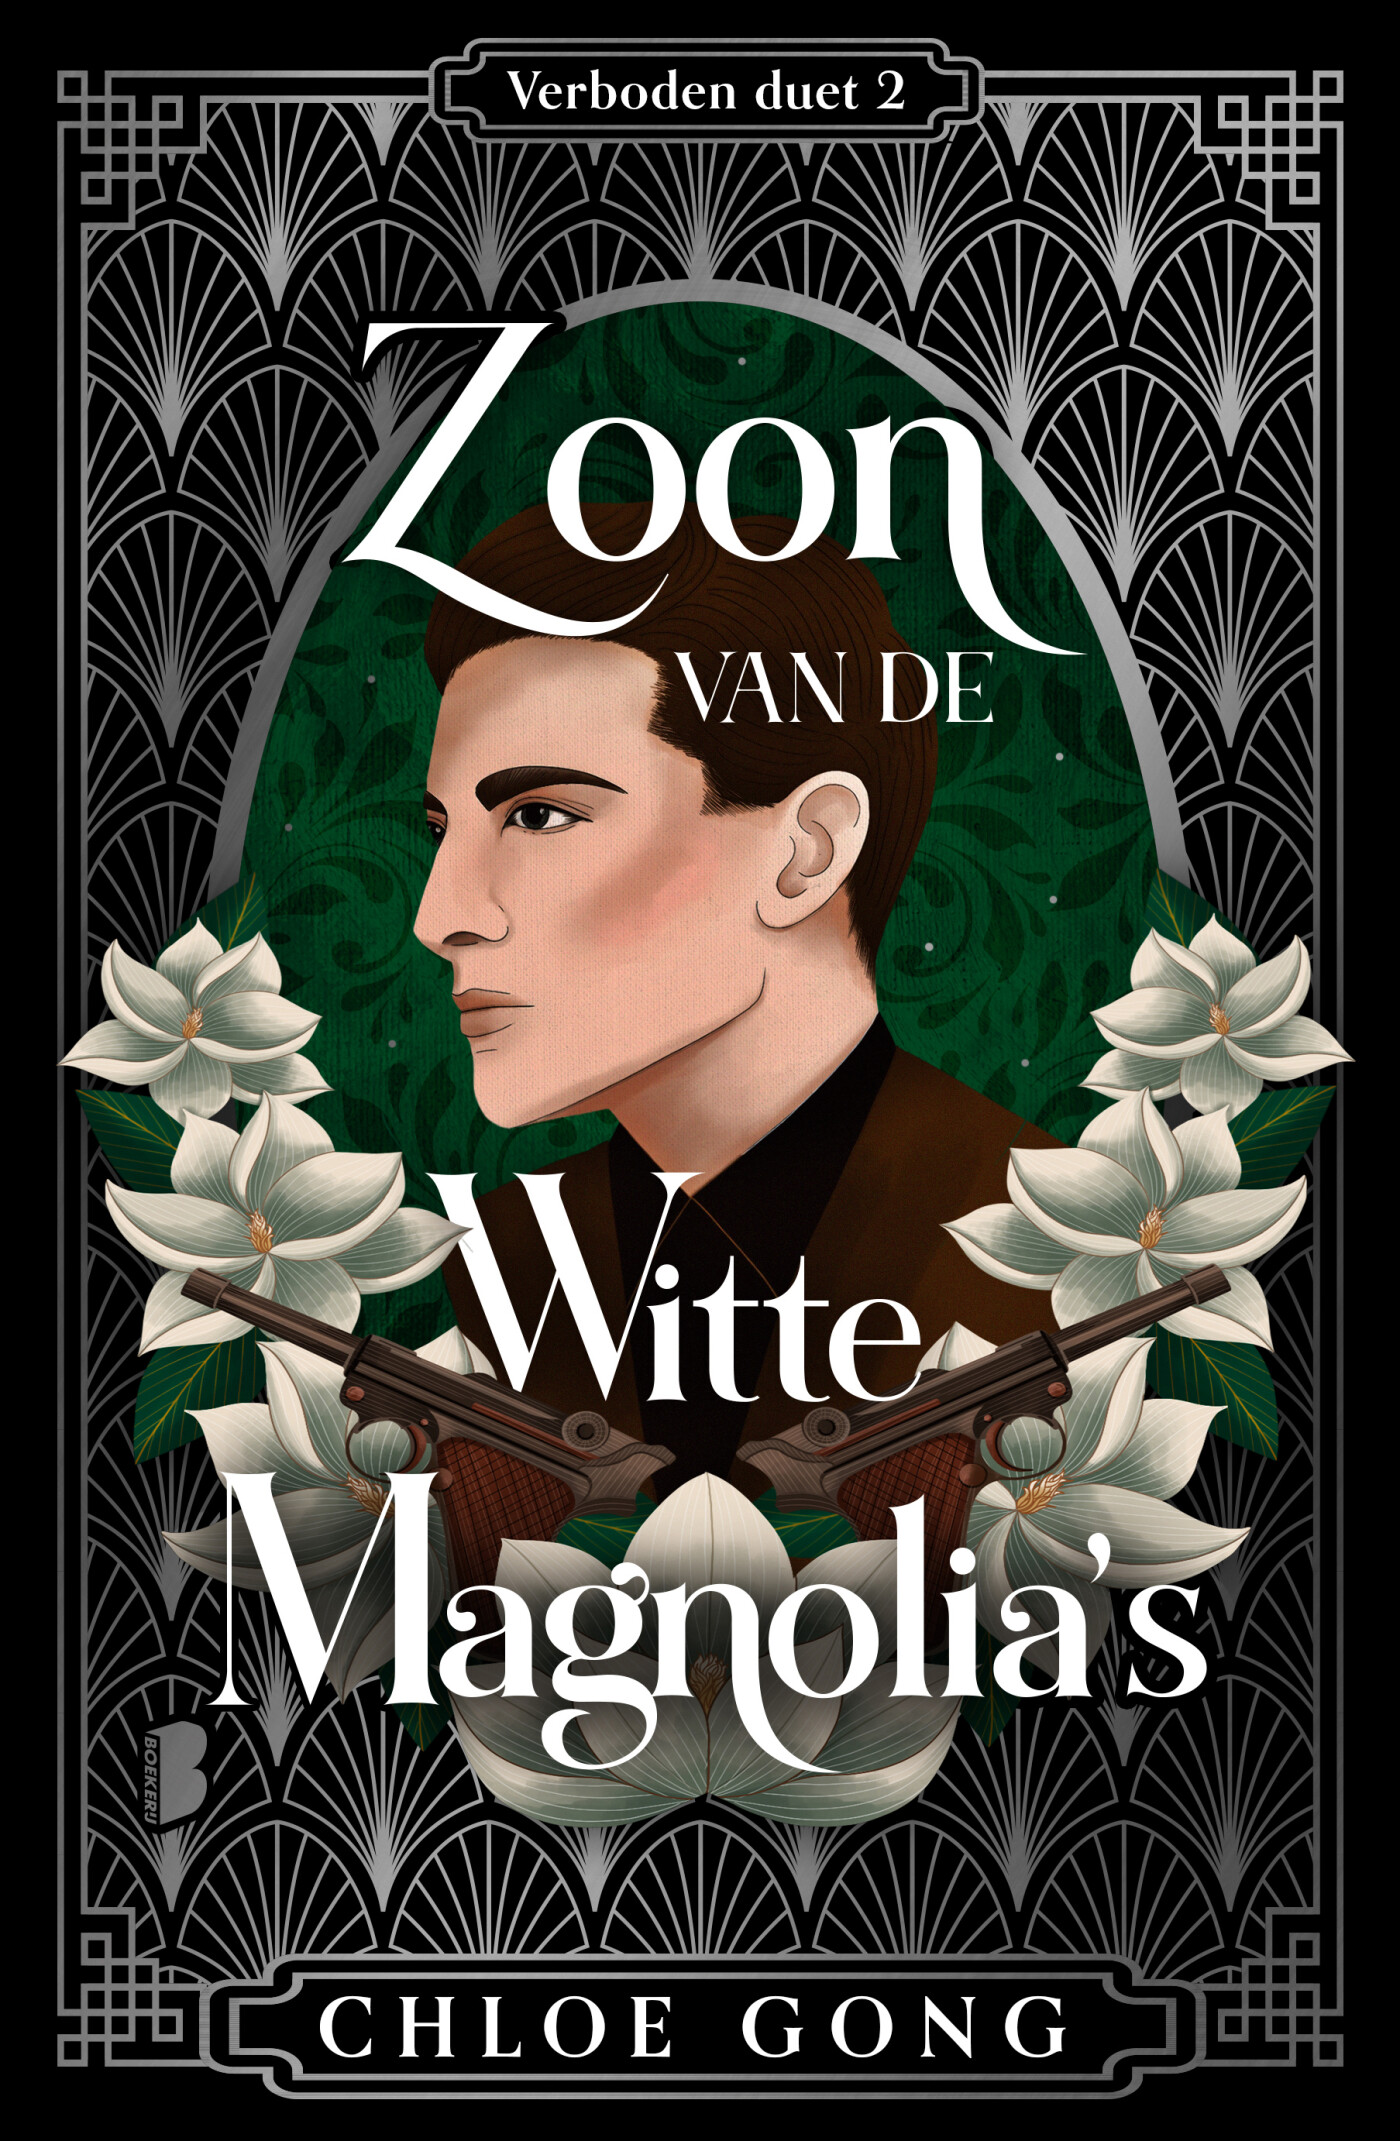 Zoon van de Witte Magnolia's Limited edition